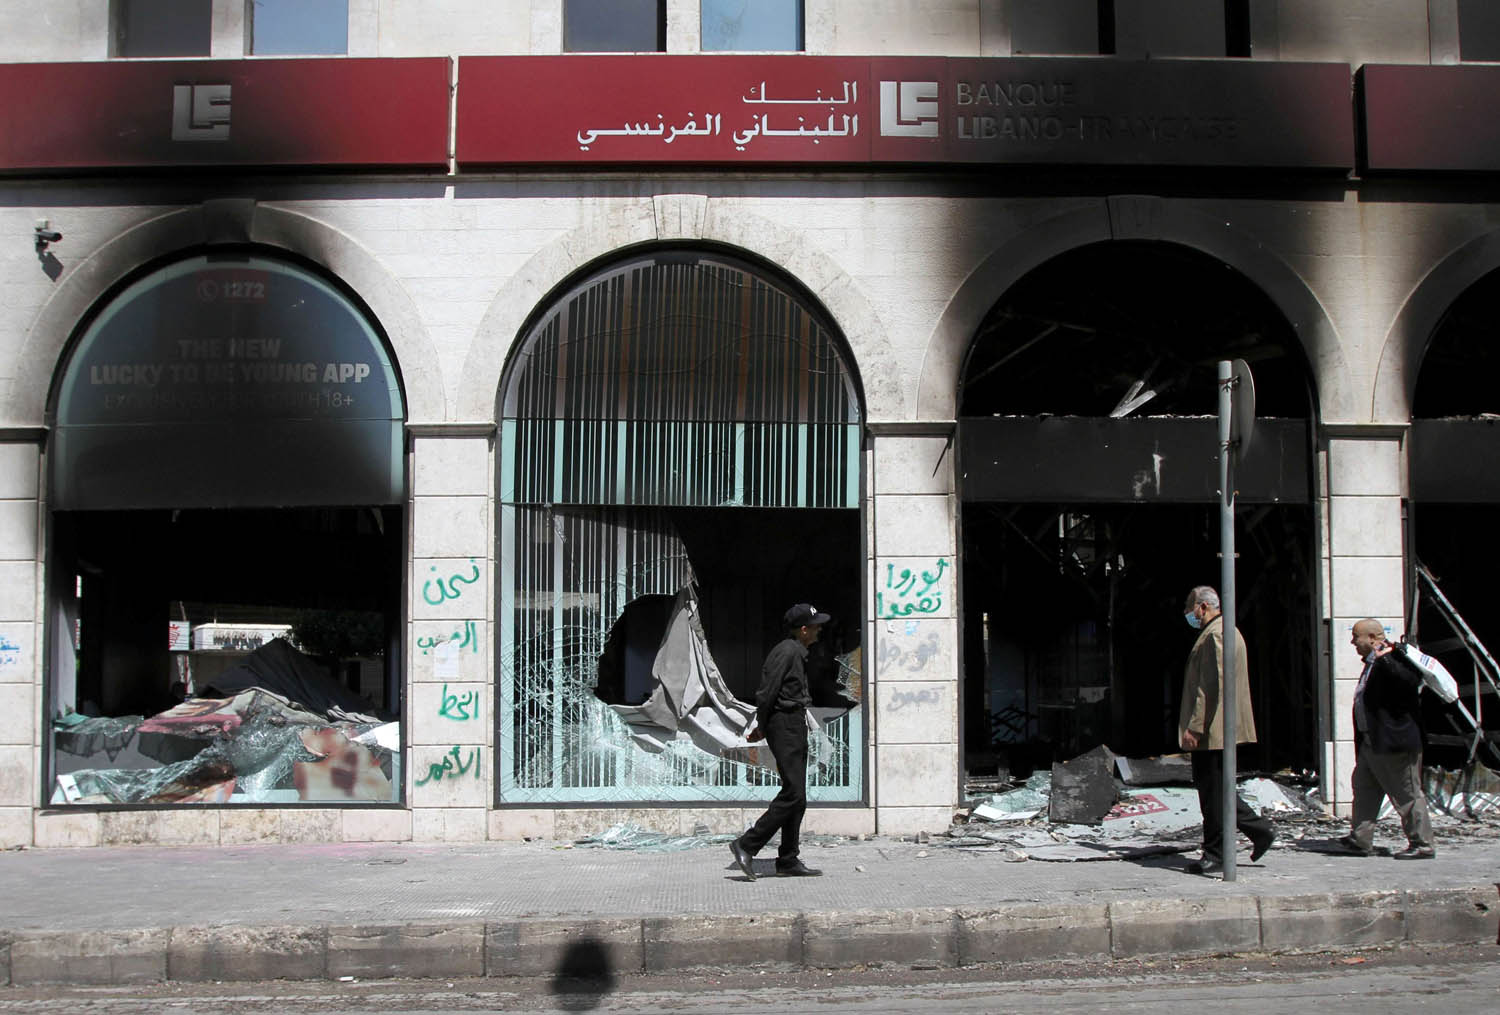 واجهة محروقة لمصرف في طرابلس   